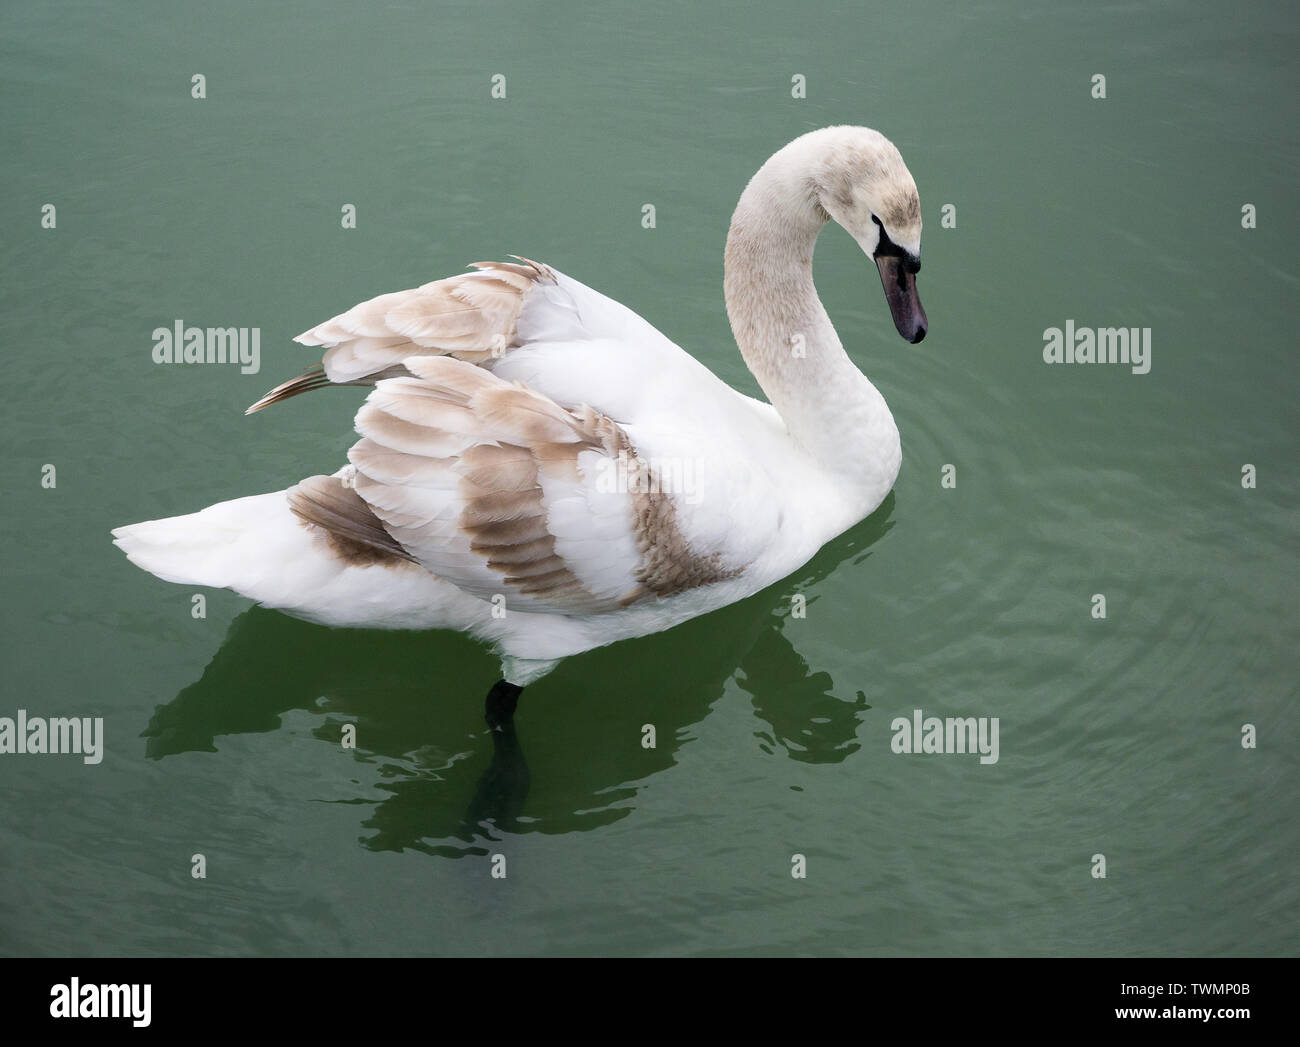 El Color De La Imagen De Una Joven Cisne Y Su Reflejo En El Agua